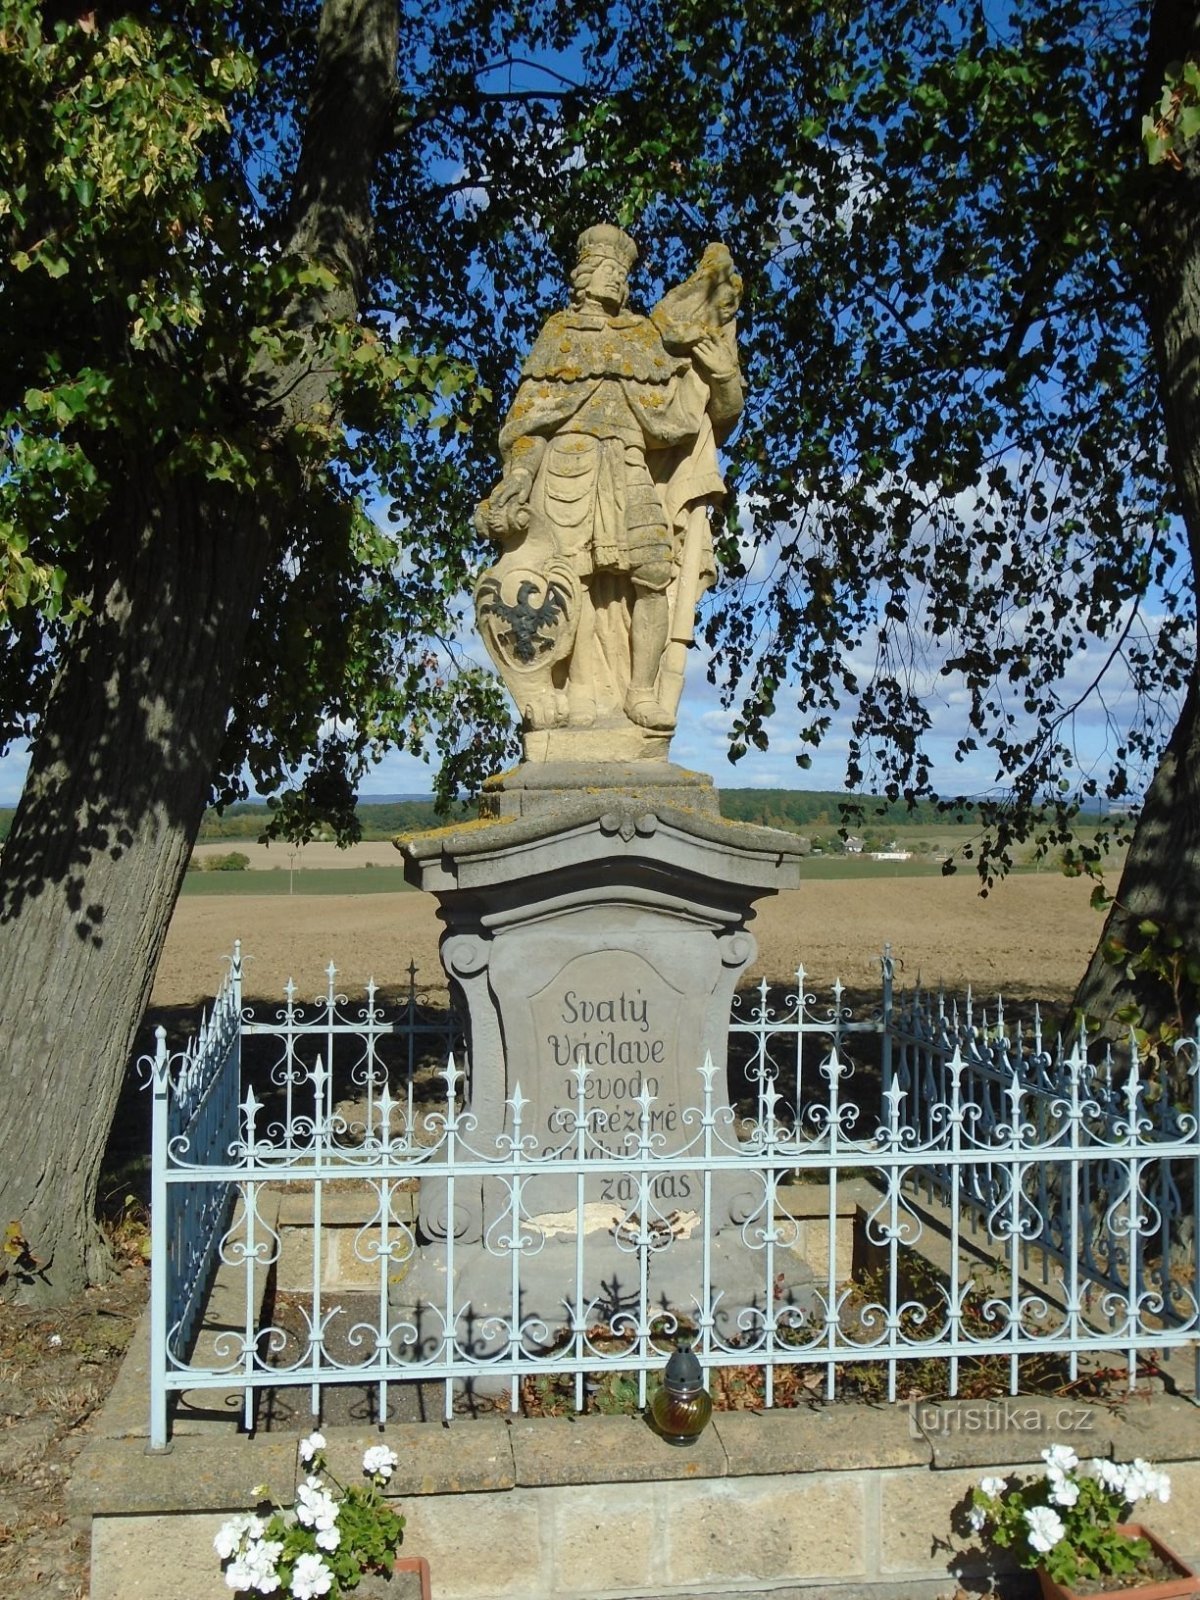 Άγαλμα του Αγ. Václav (Petrovice, 29.9.2018/XNUMX/XNUMX)